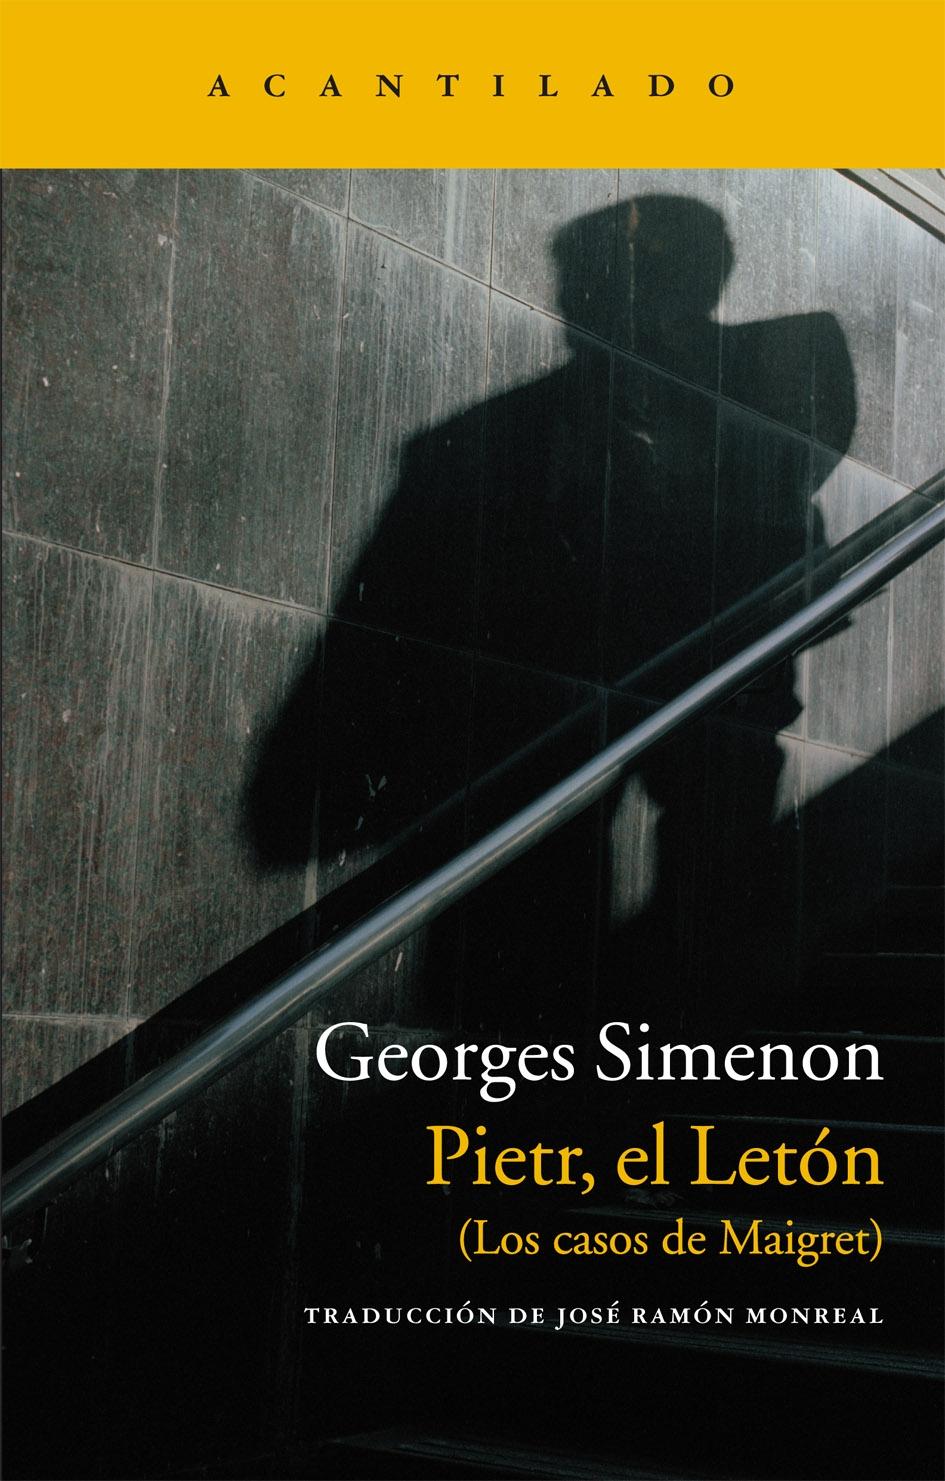 Pietr, el Letón "Los Casos de Maigret"